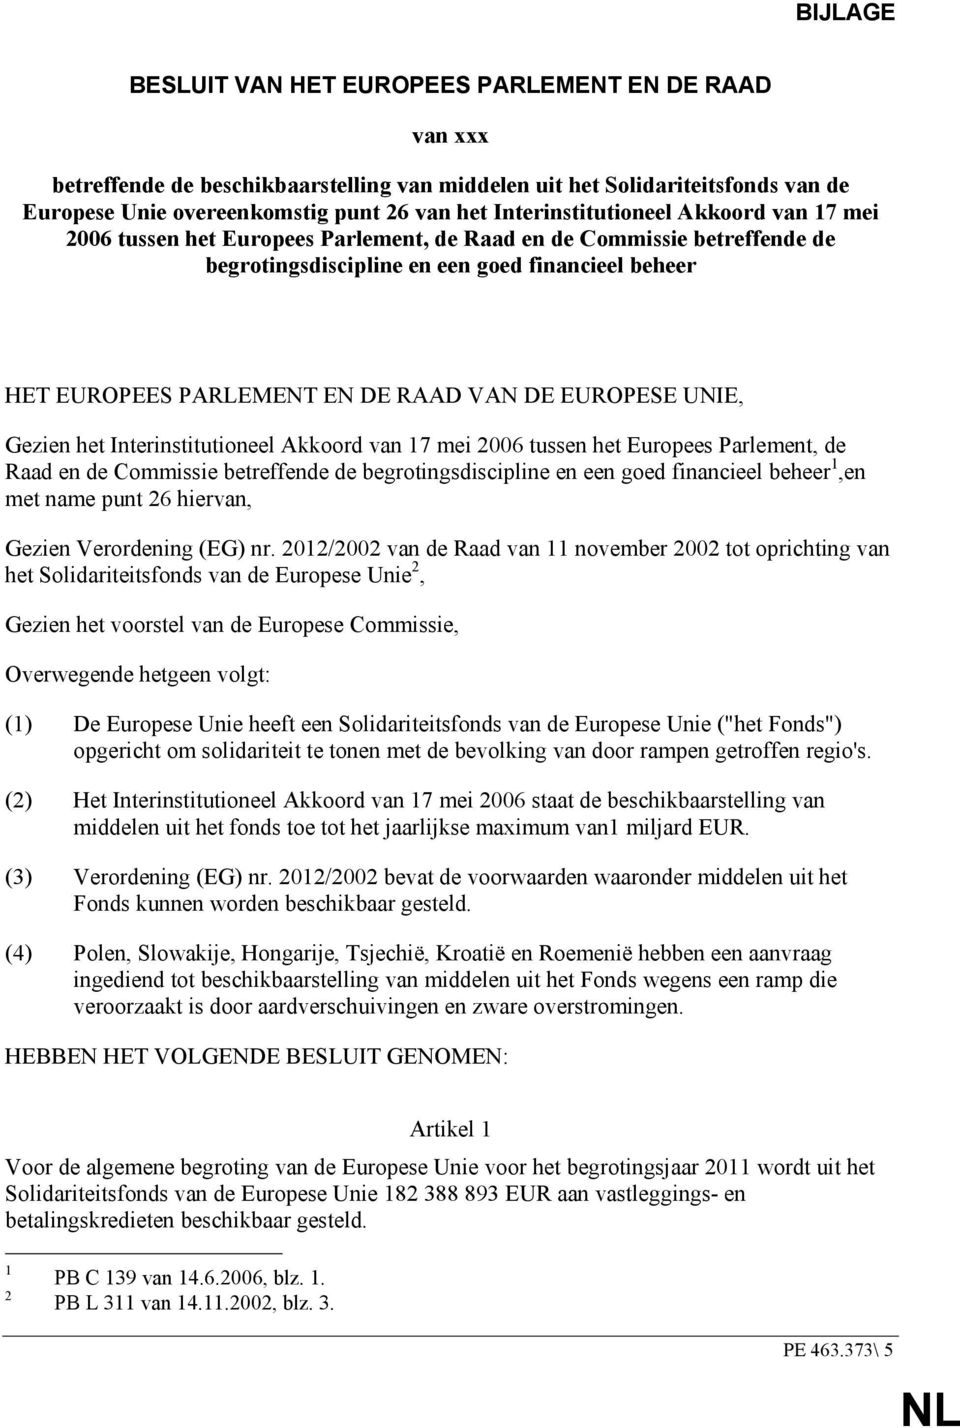 VAN DE EUROPESE UNIE, Gezien het Interinstitutioneel Akkoord van 17 mei 2006 tussen het Europees Parlement, de Raad en de Commissie betreffende de begrotingsdiscipline en een goed financieel beheer